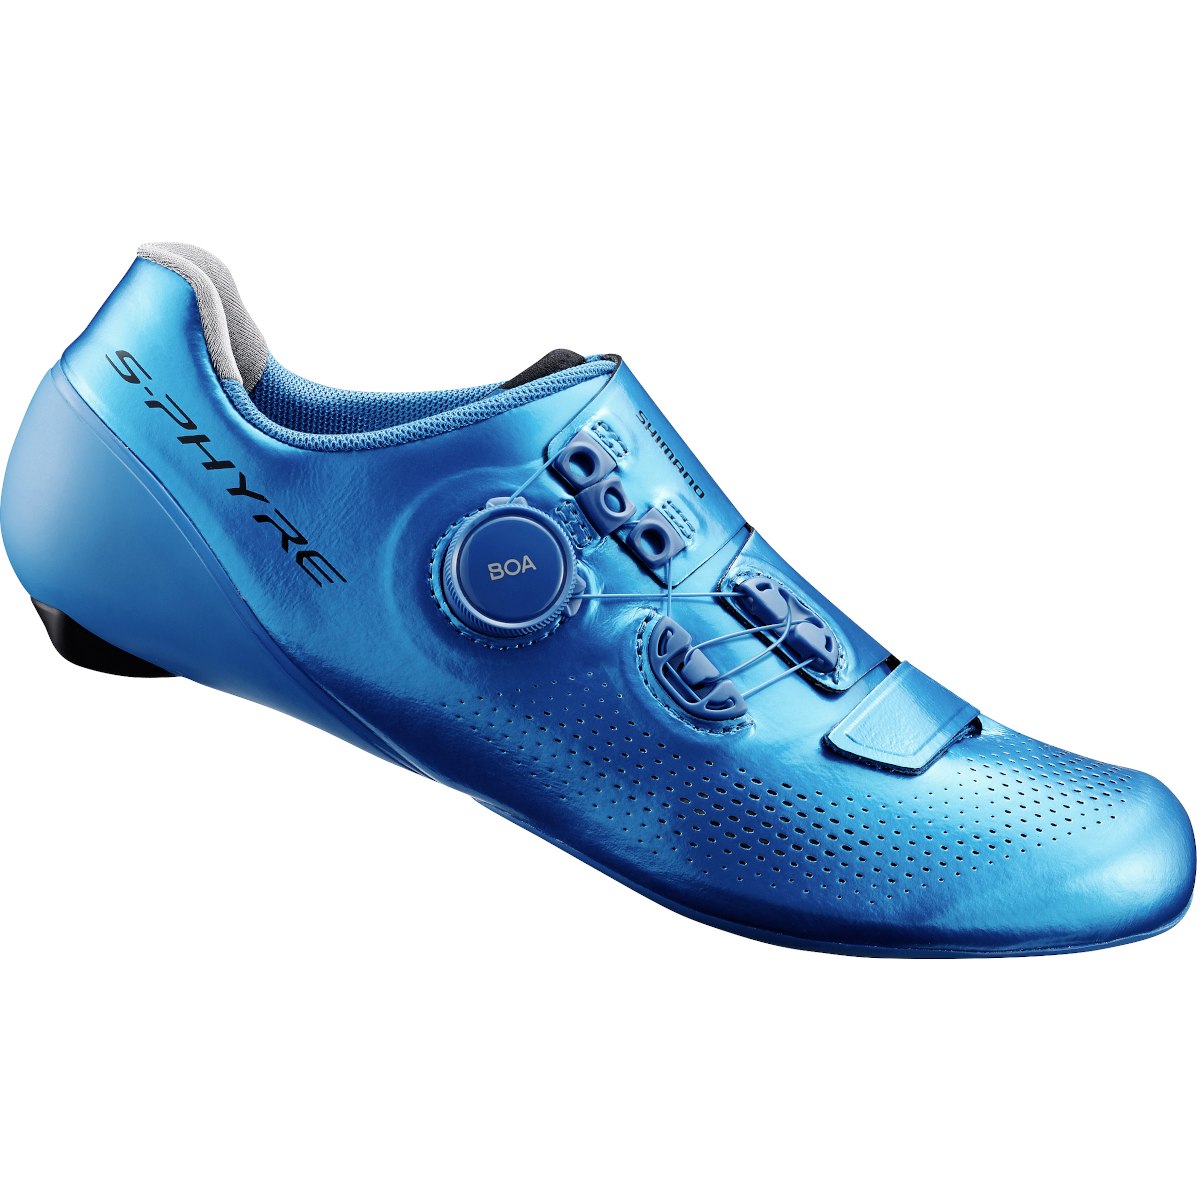 Produktbild von Shimano S-Phyre SH-RC901T Rennradschuhe - blau